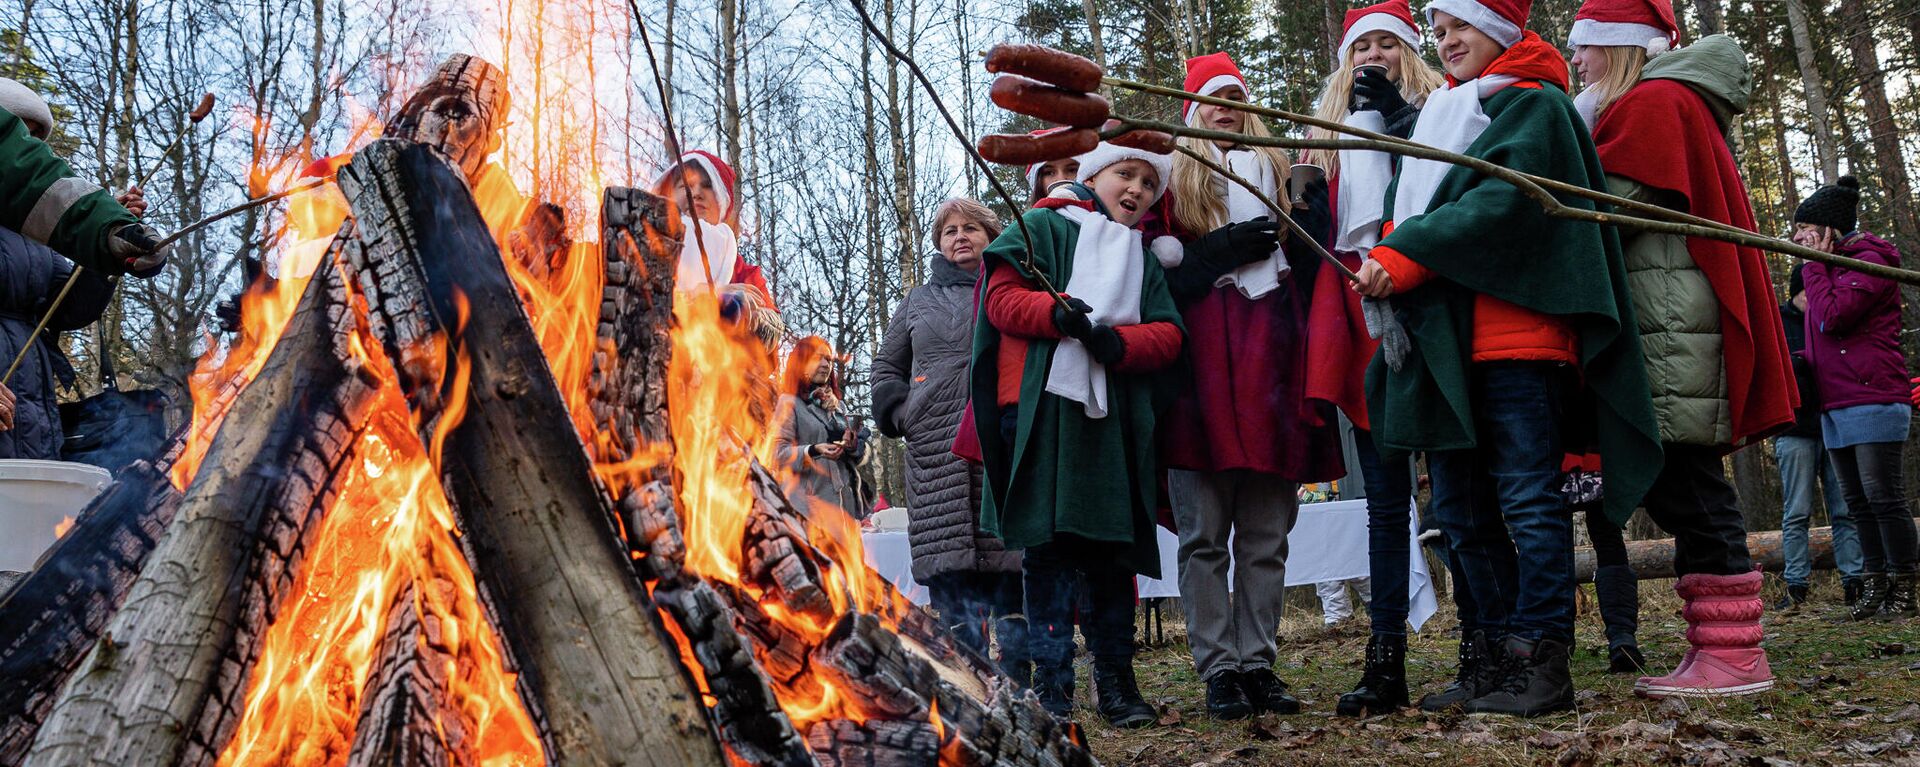 Мэр Риги Мартиньш Стакис вместе с детьми выбрал рождественские елки для Риги - Sputnik Латвия, 1920, 24.11.2021